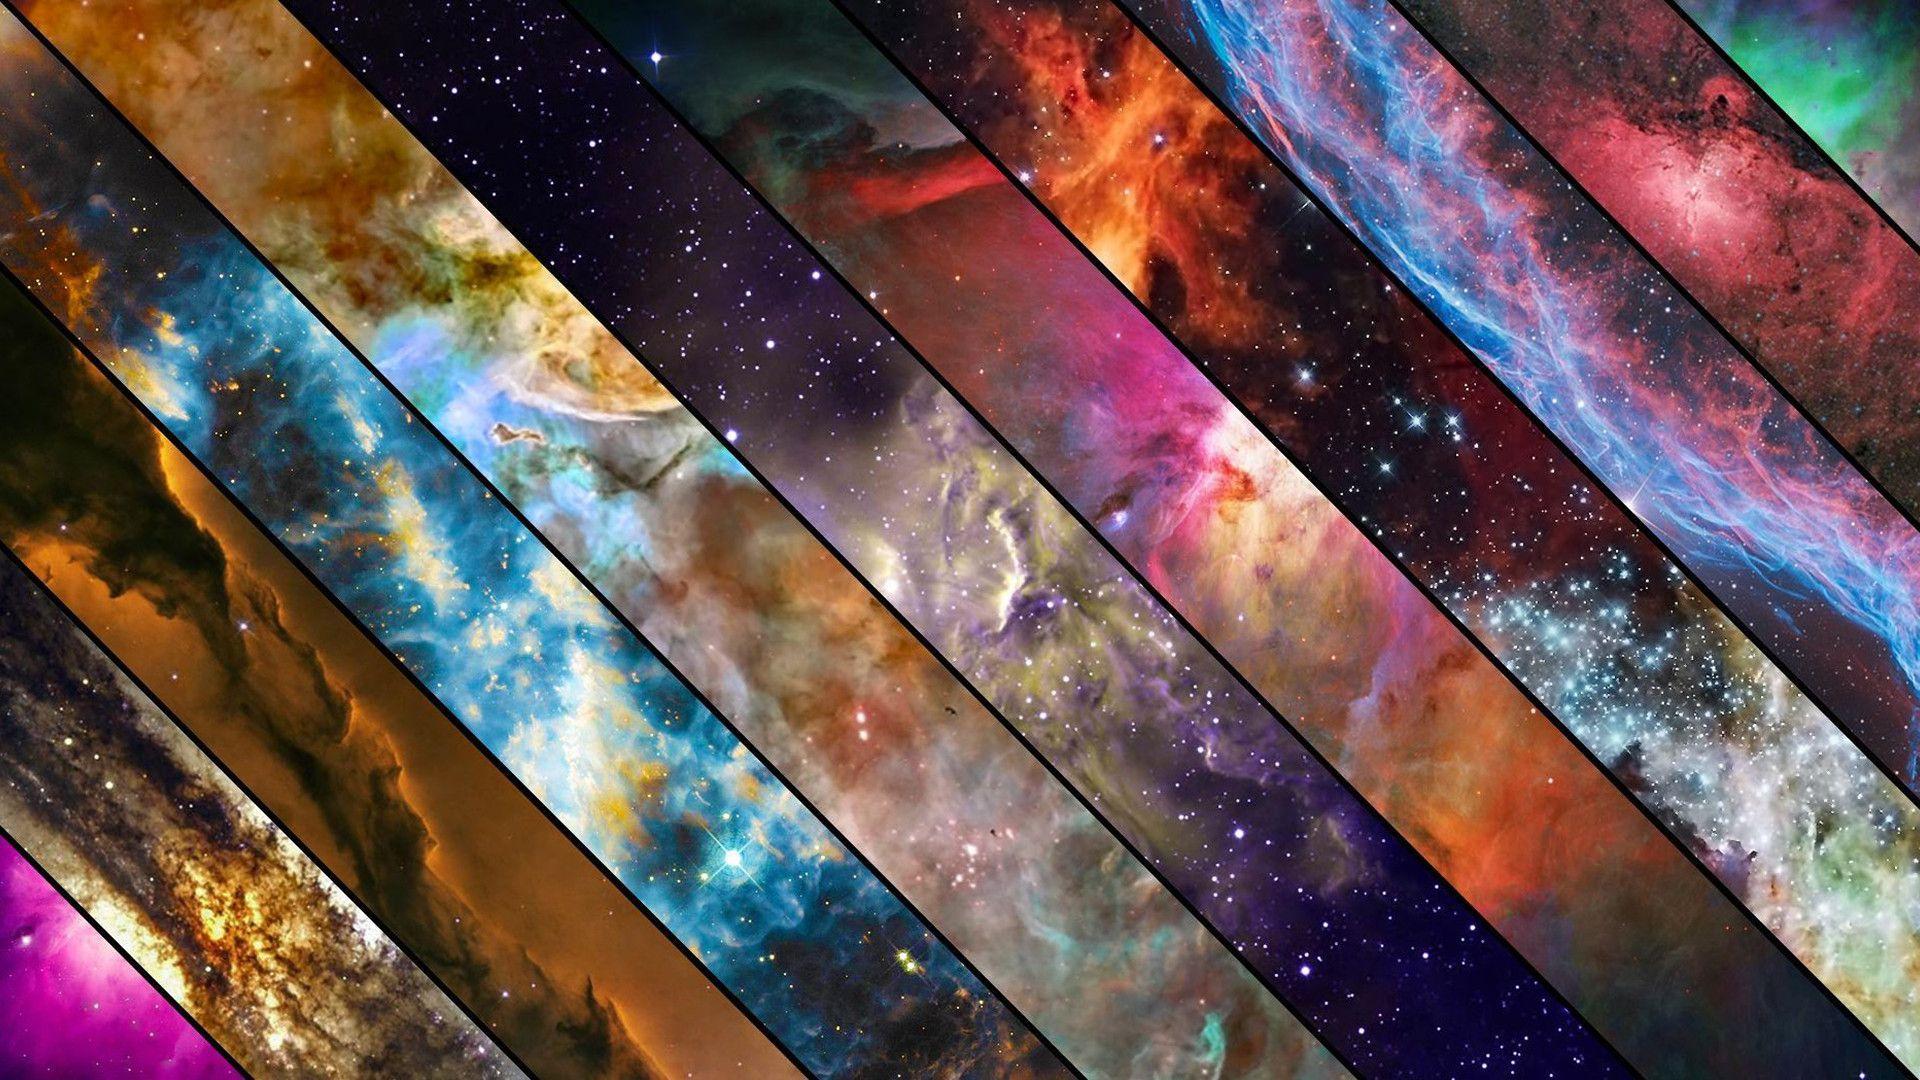 Abstract Space Wallpapers - Top Những Hình Ảnh Đẹp